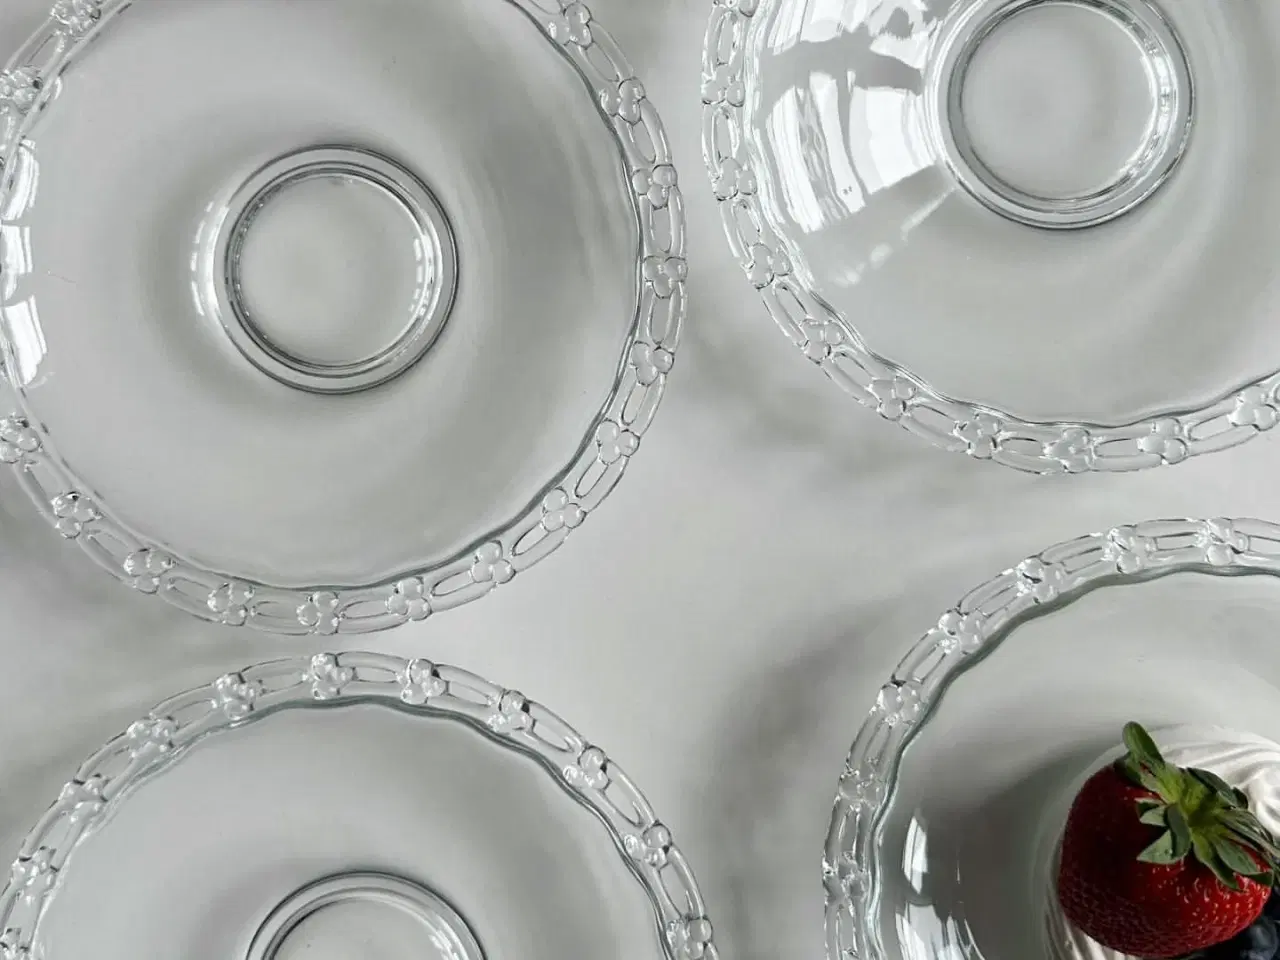 Billede 5 - Kagetallerkner, klart glas m gennembrudt kant, 6 stk samlet